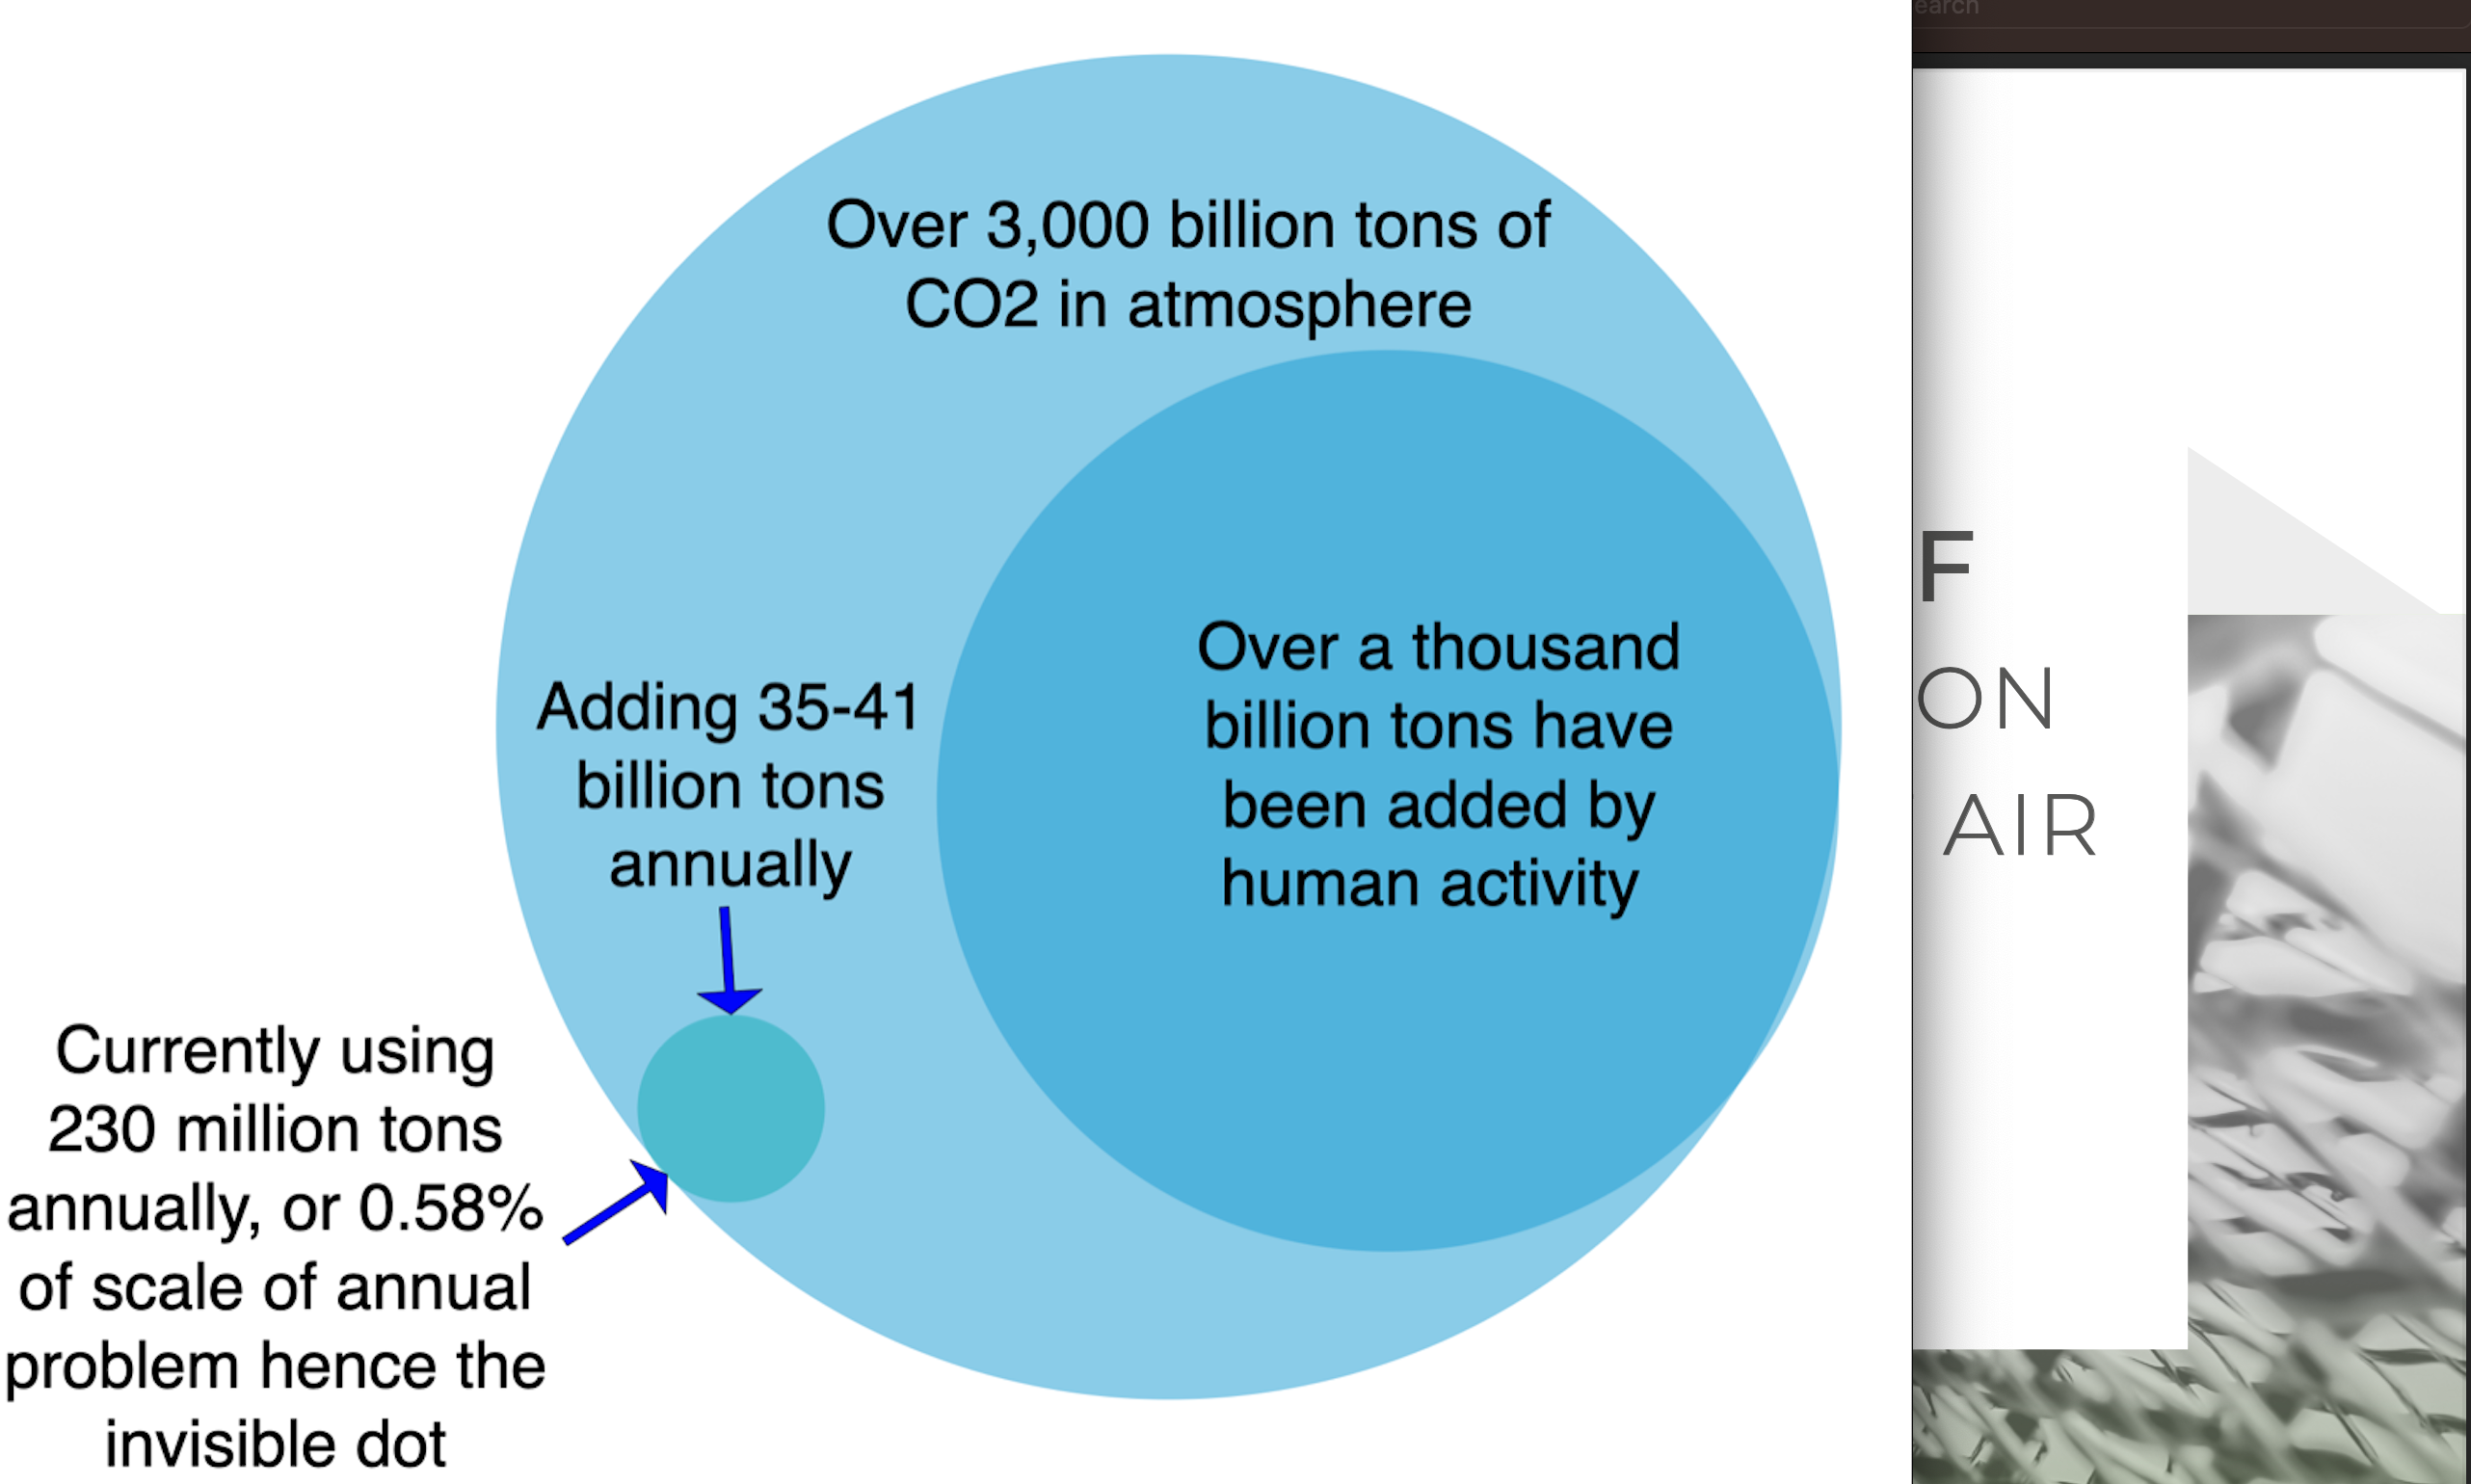 Scala dei problemi di CO2 rispetto alla domanda globale di CO2 per autore